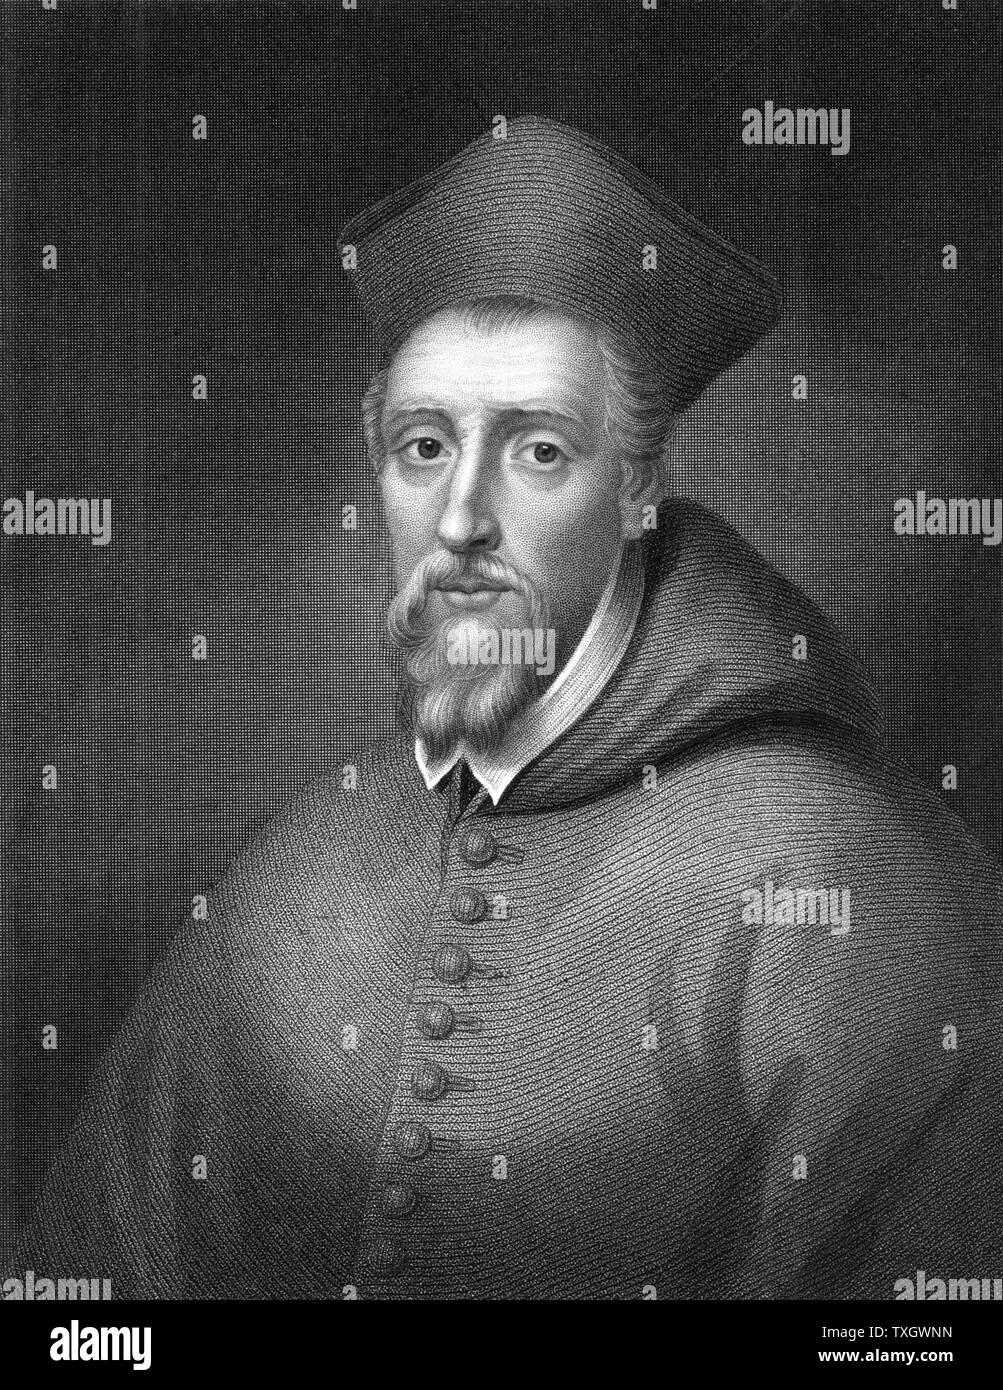 William Allen (1532-1594) prelato inglese; creato cardinale 1587. Sulla adesione di Elizabeth Mi sono recato in esilio. Fondata collegi inglesi a formare i missionari a riconvertire Inghilterra del Cattolicesimo Romano. Morì a Roma l'incisione Foto Stock